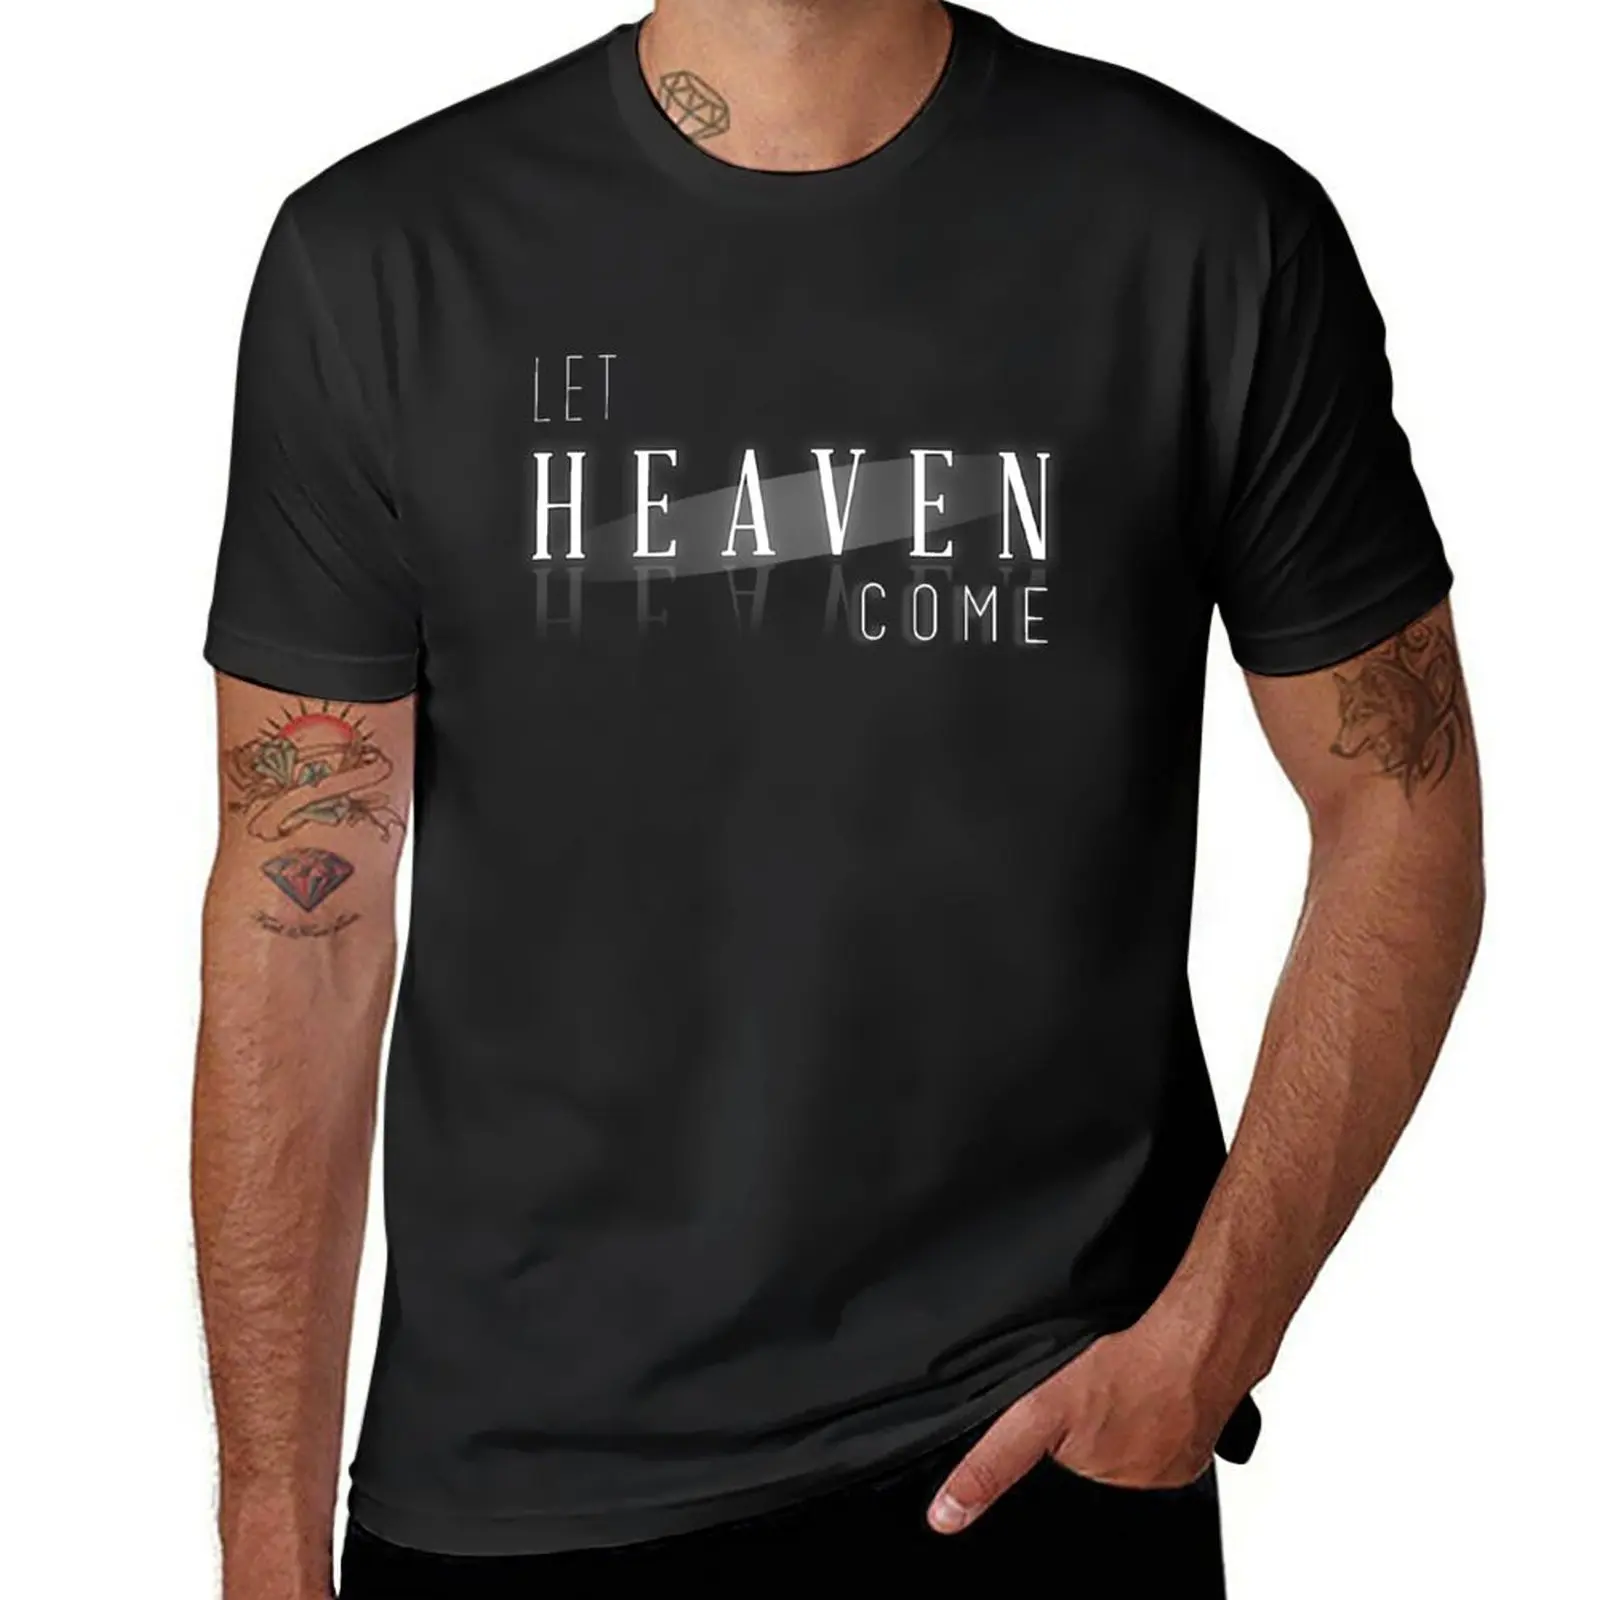 

Новинка футболка Let Heaven Come футболка с графическим рисунком забавная футболка большие и высокие футболки для мужчин